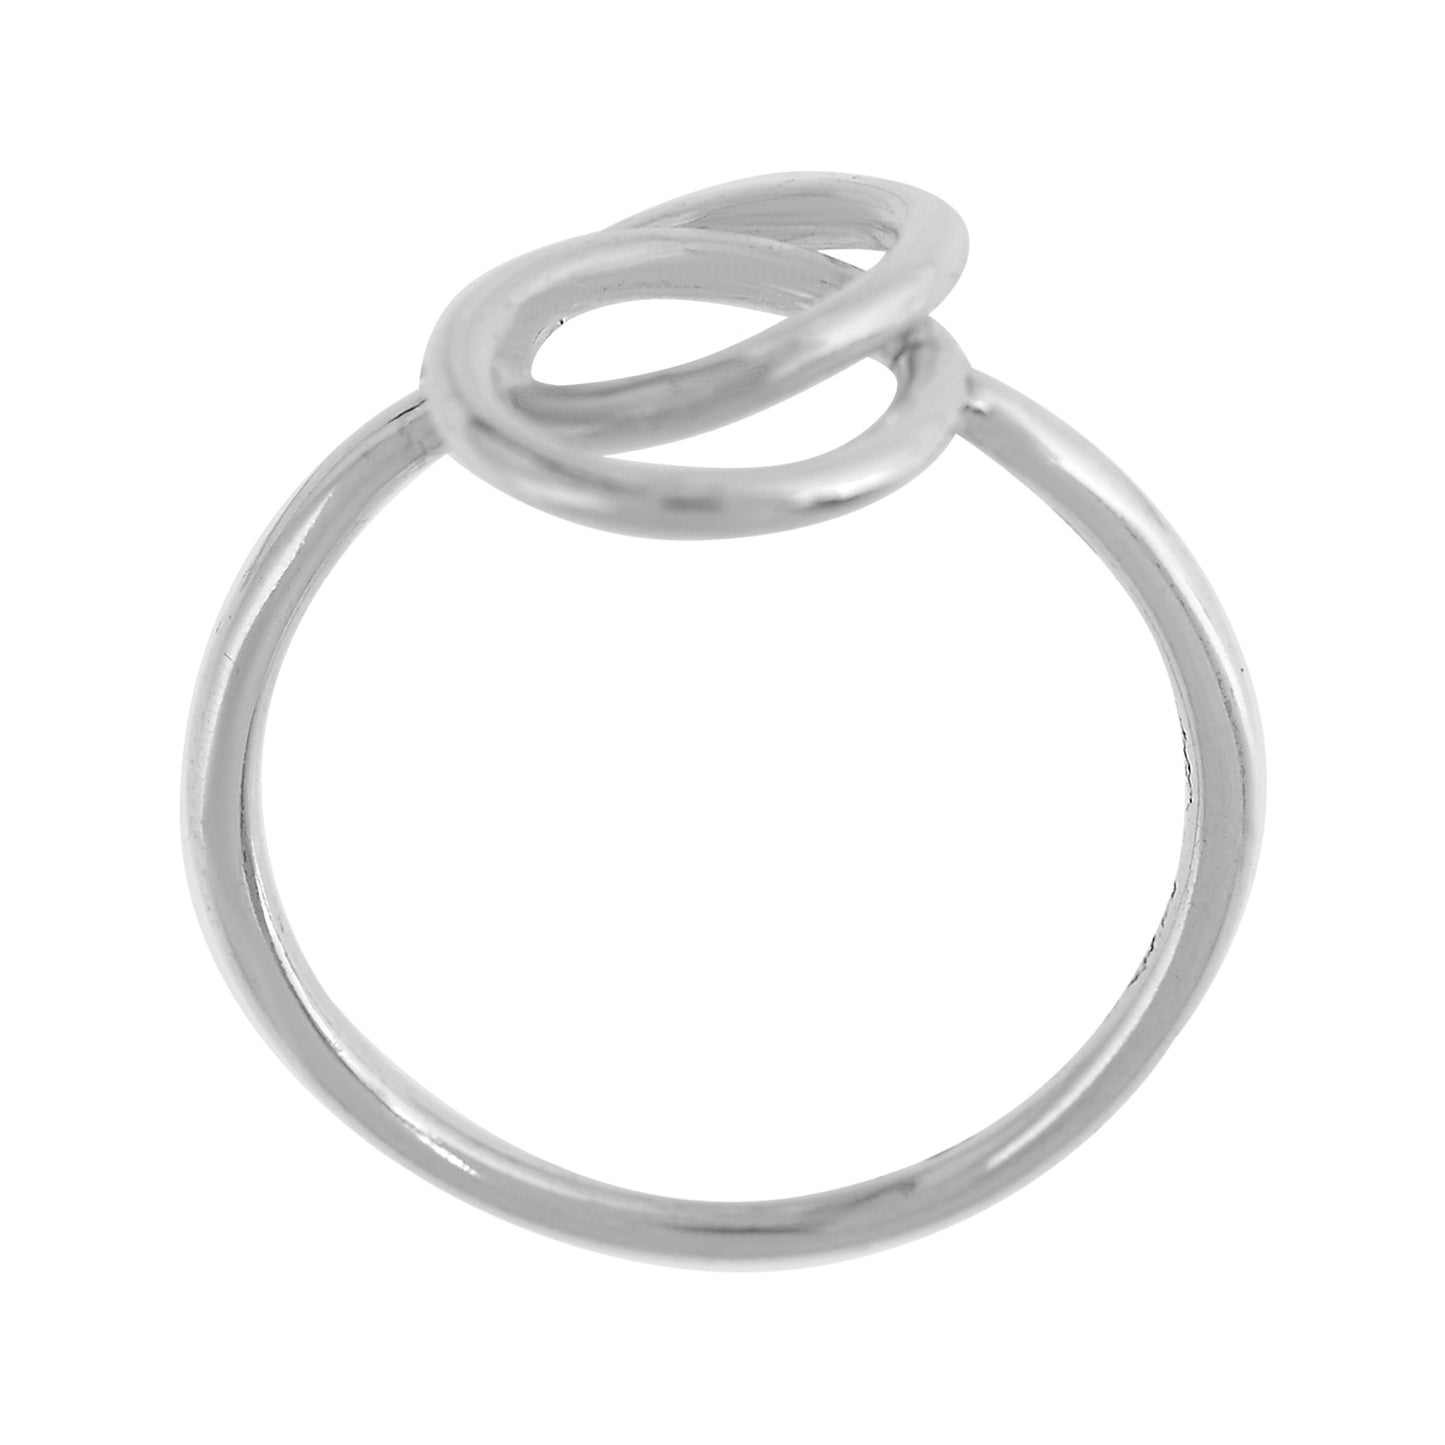 Silver ring "Unique Silver" "Enlazados" in 925 silver